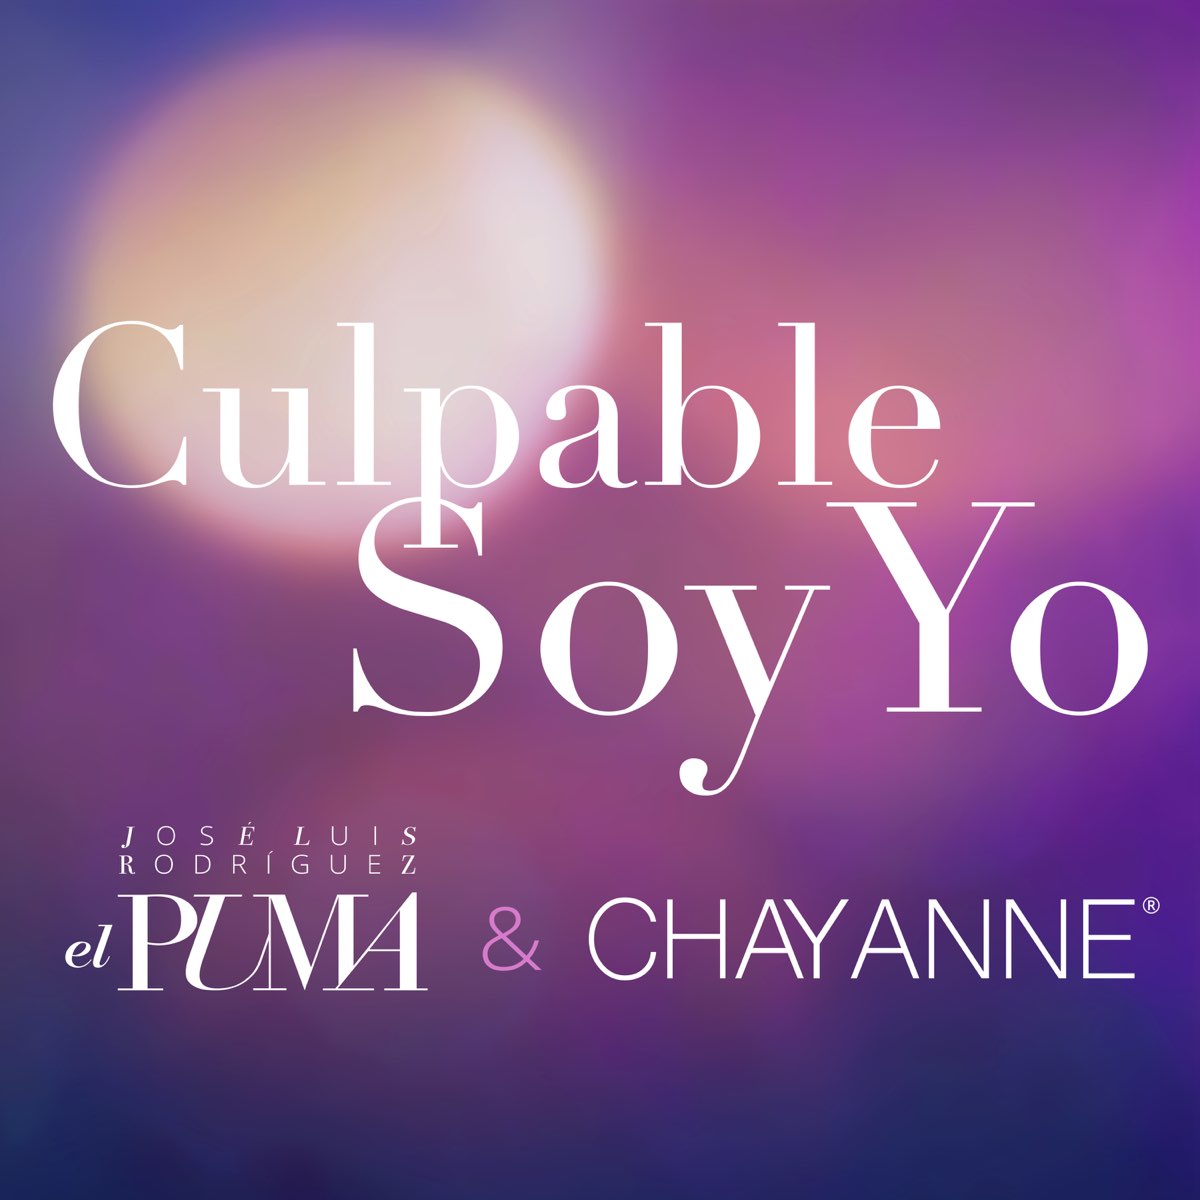 Culpable Soy Yo Single de José Luis Rodríguez Chayanne en Music